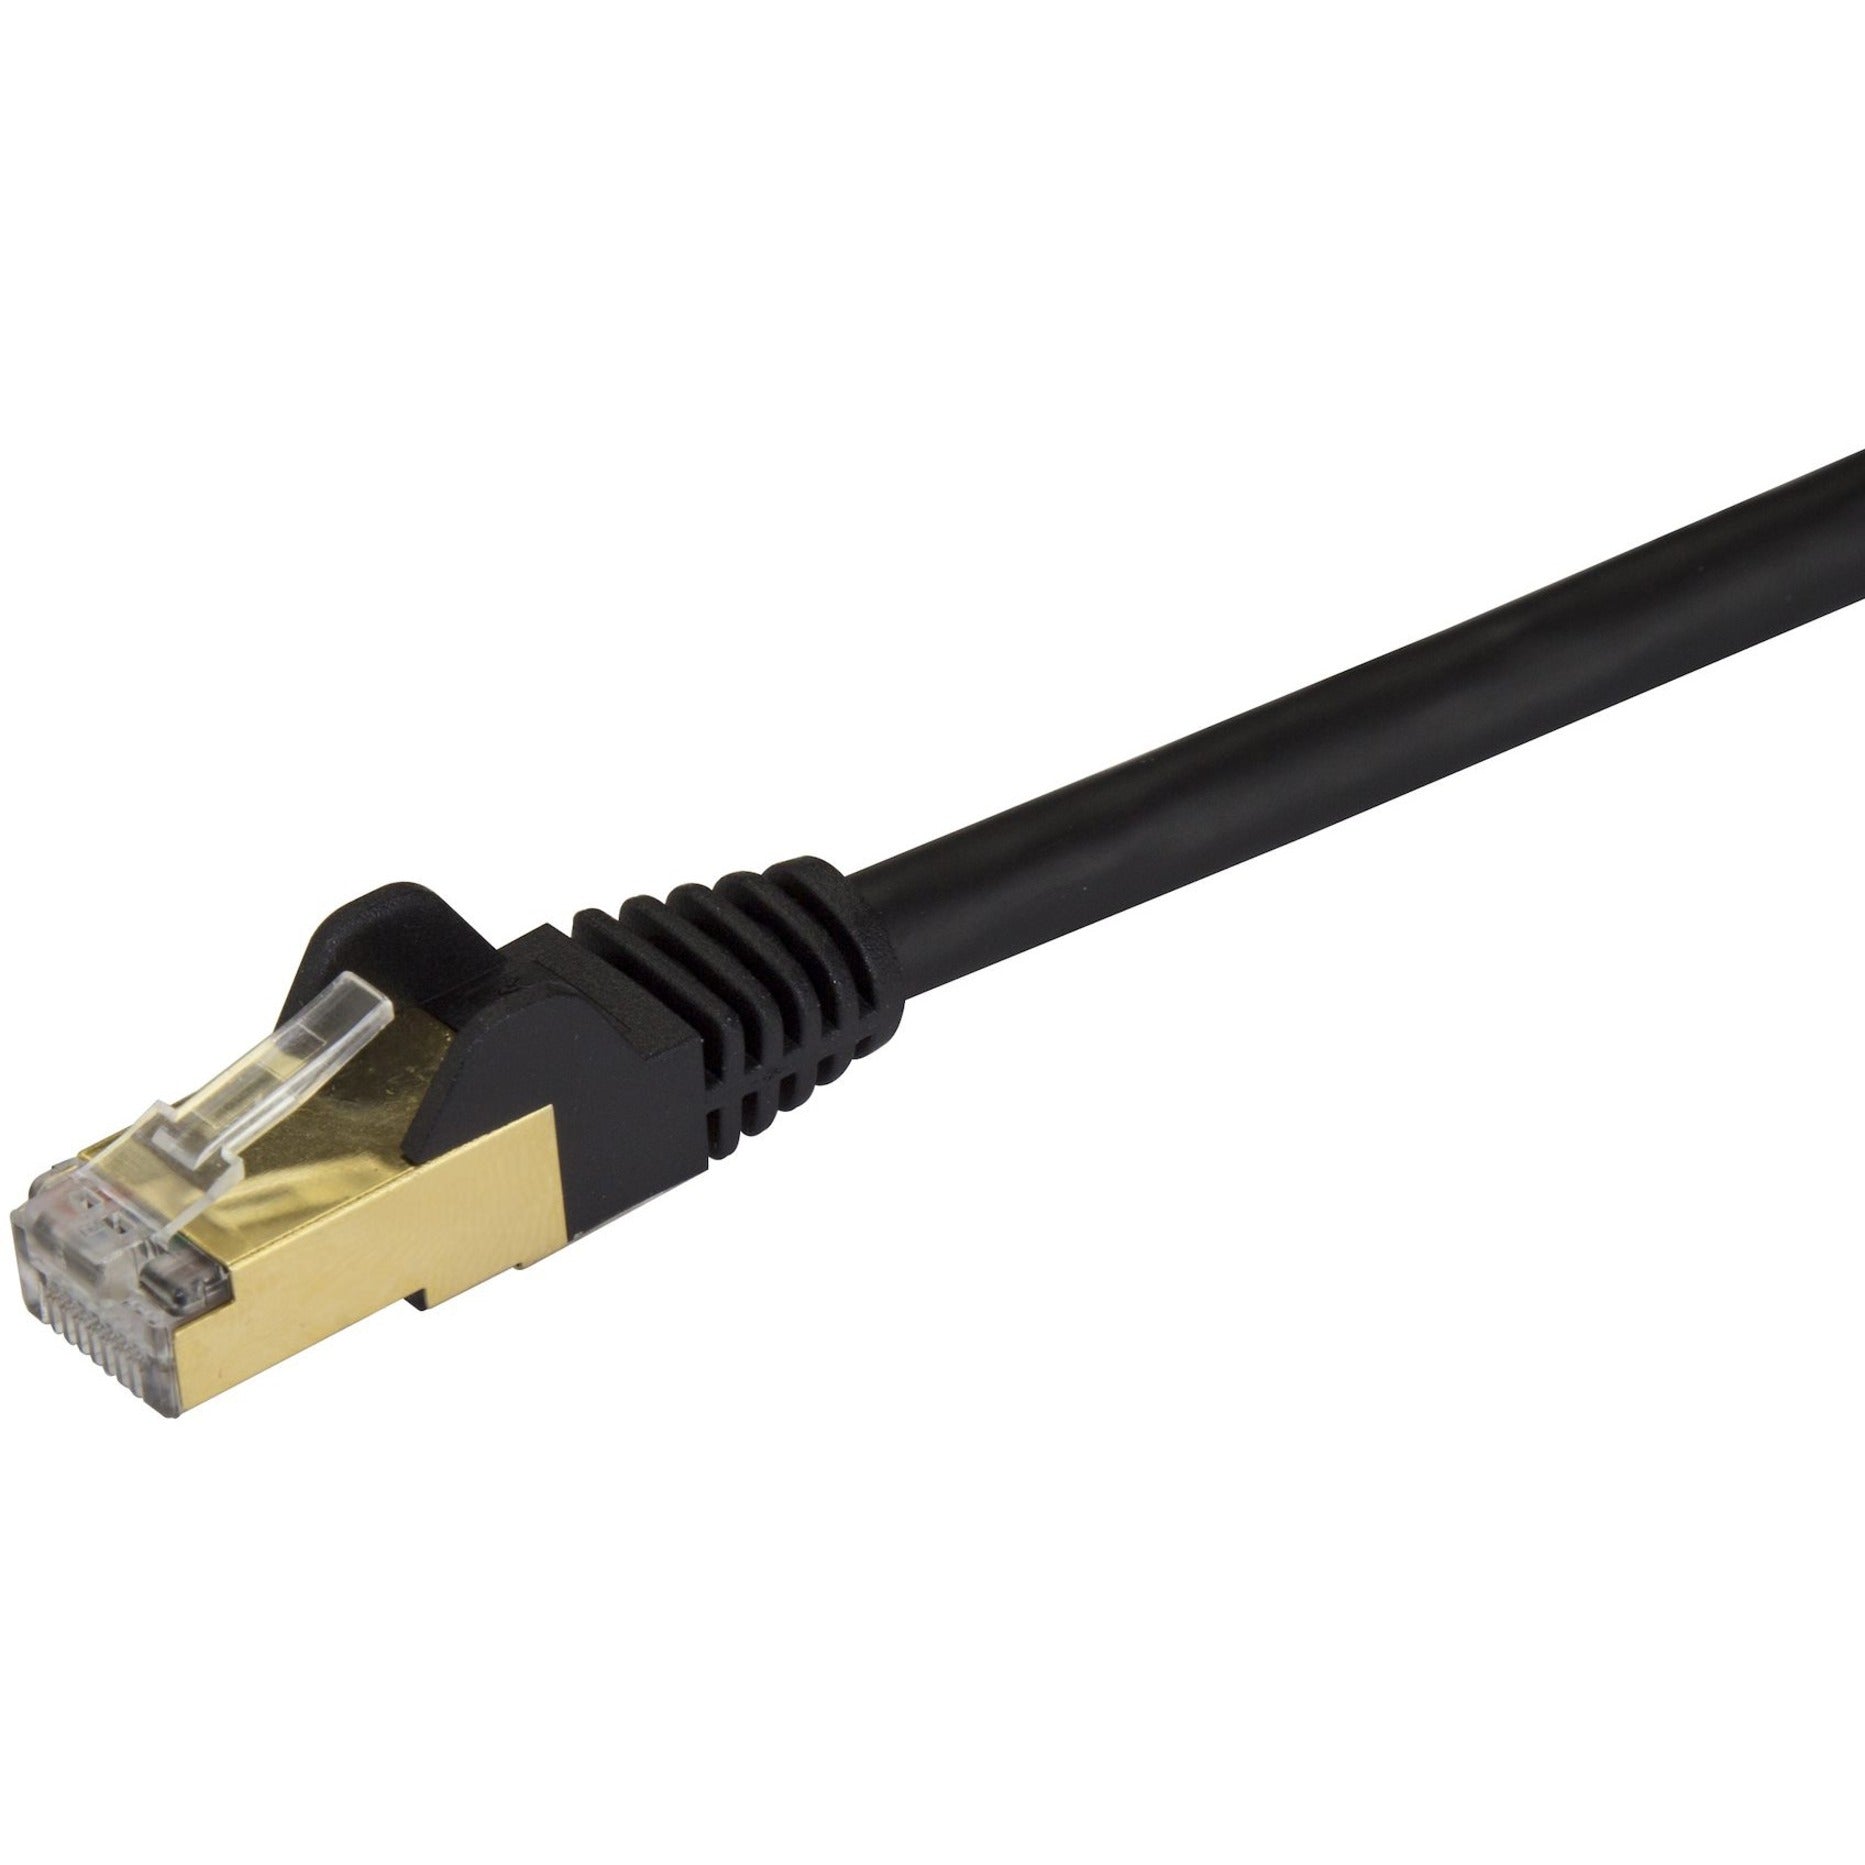 StarTech.com C6ASPAT20BK Cat6a Ethernet Patch Cable - Shielded (STP) - 20 ft., Black, Long Ethernet Cord